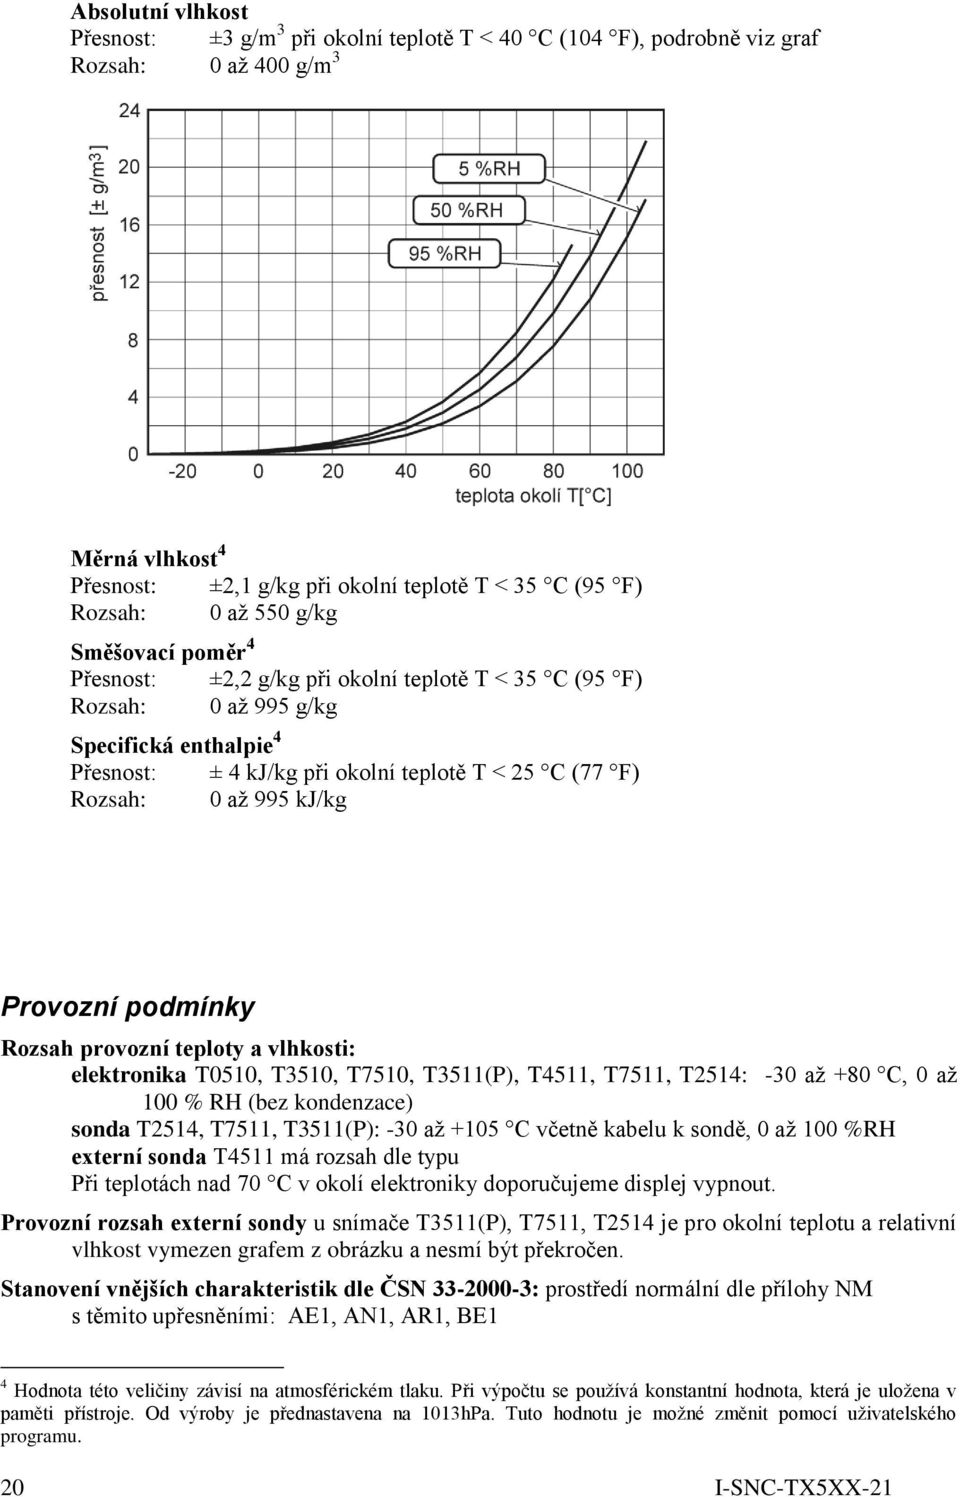 kj/kg Provozní podmínky Rozsah provozní teploty a vlhkosti: elektronika T0510, T3510, T7510, T3511(P), T4511, T7511, T2514: -30 až +80 C, 0 až 100 % RH (bez kondenzace) sonda T2514, T7511, T3511(P):